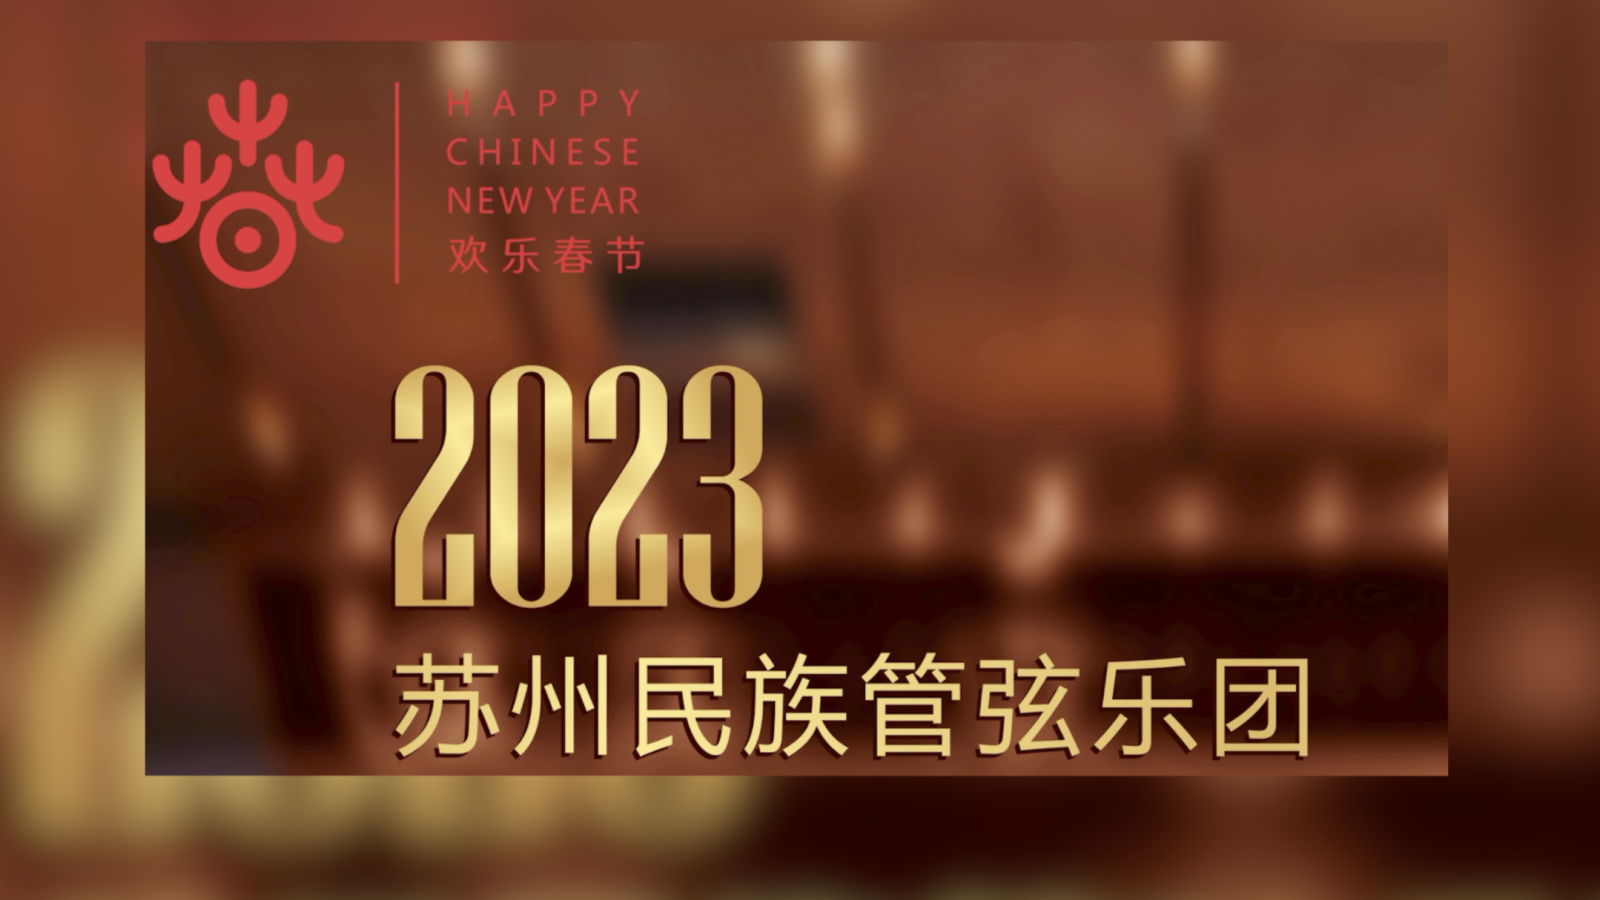 TV-Tipp: Neujahrswünsche bei China am Puls